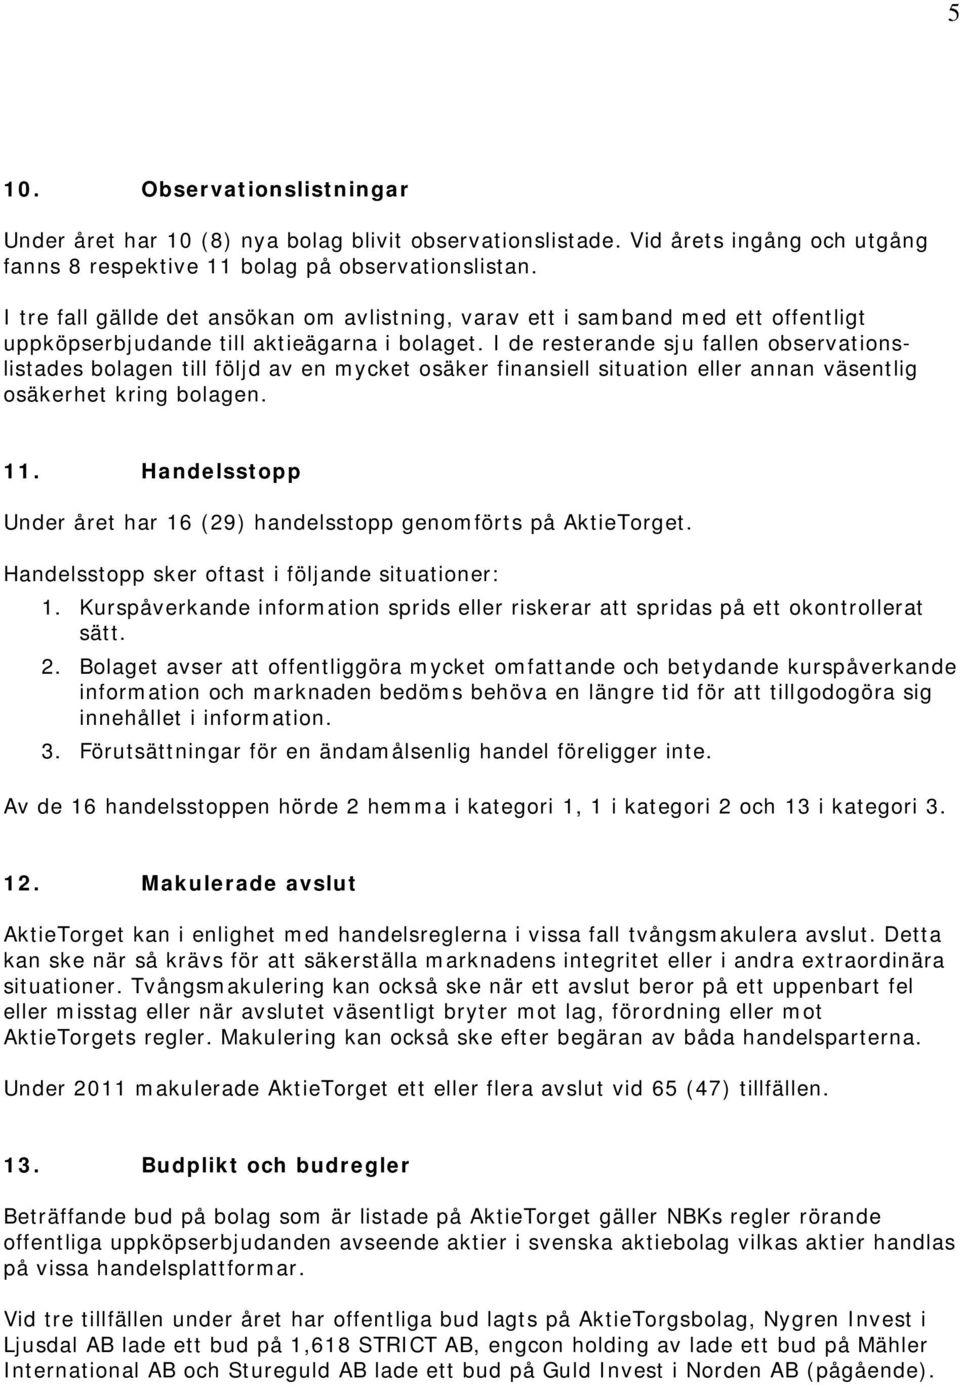 Årsrapport från AktieTorgets marknadsövervakning Innehåll - PDF ...